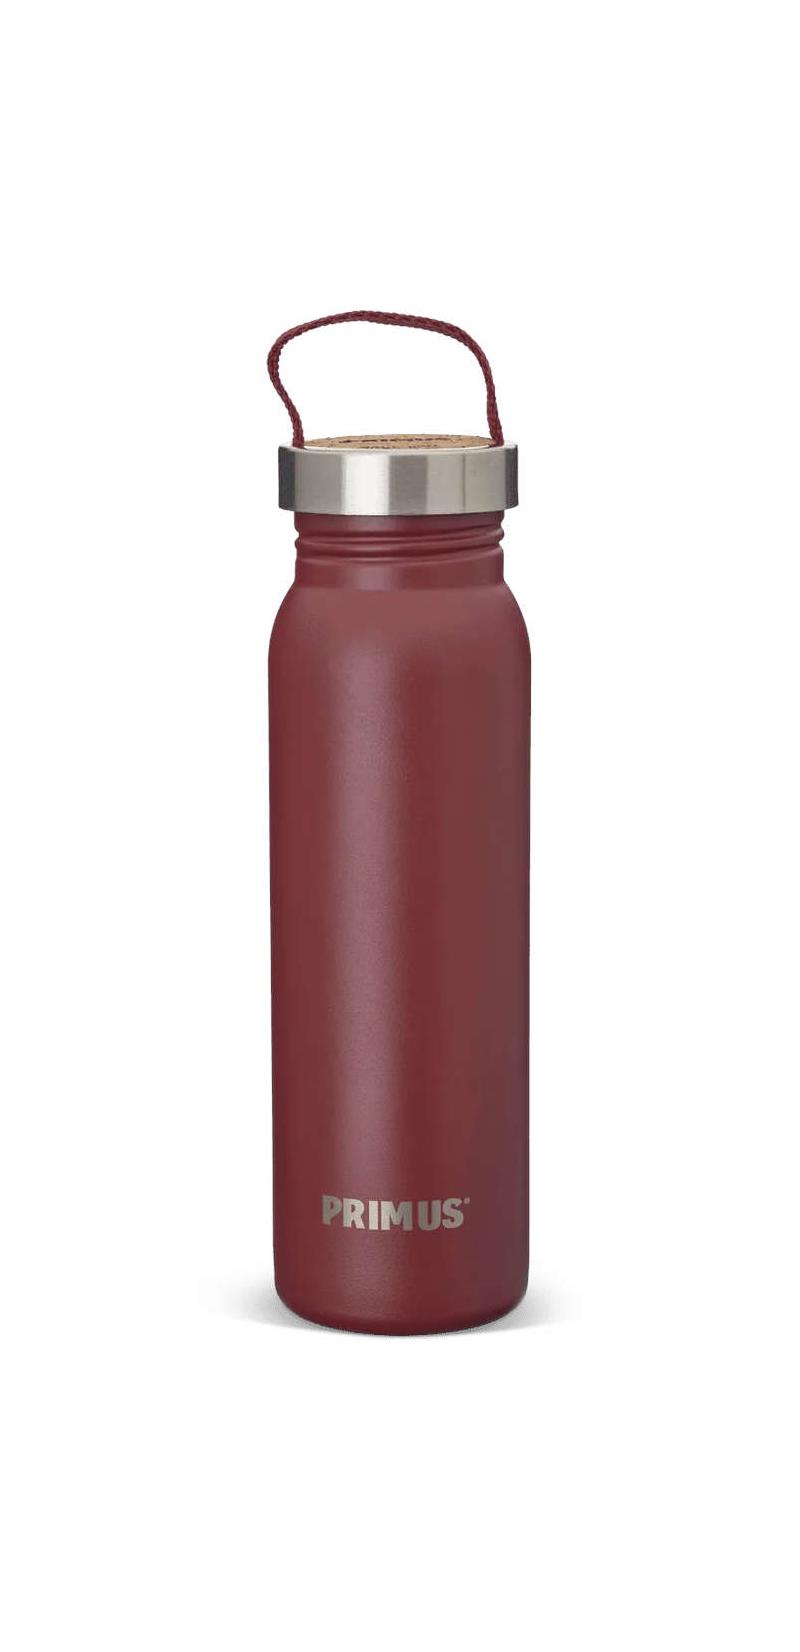 Primus Klunken Bottle-2